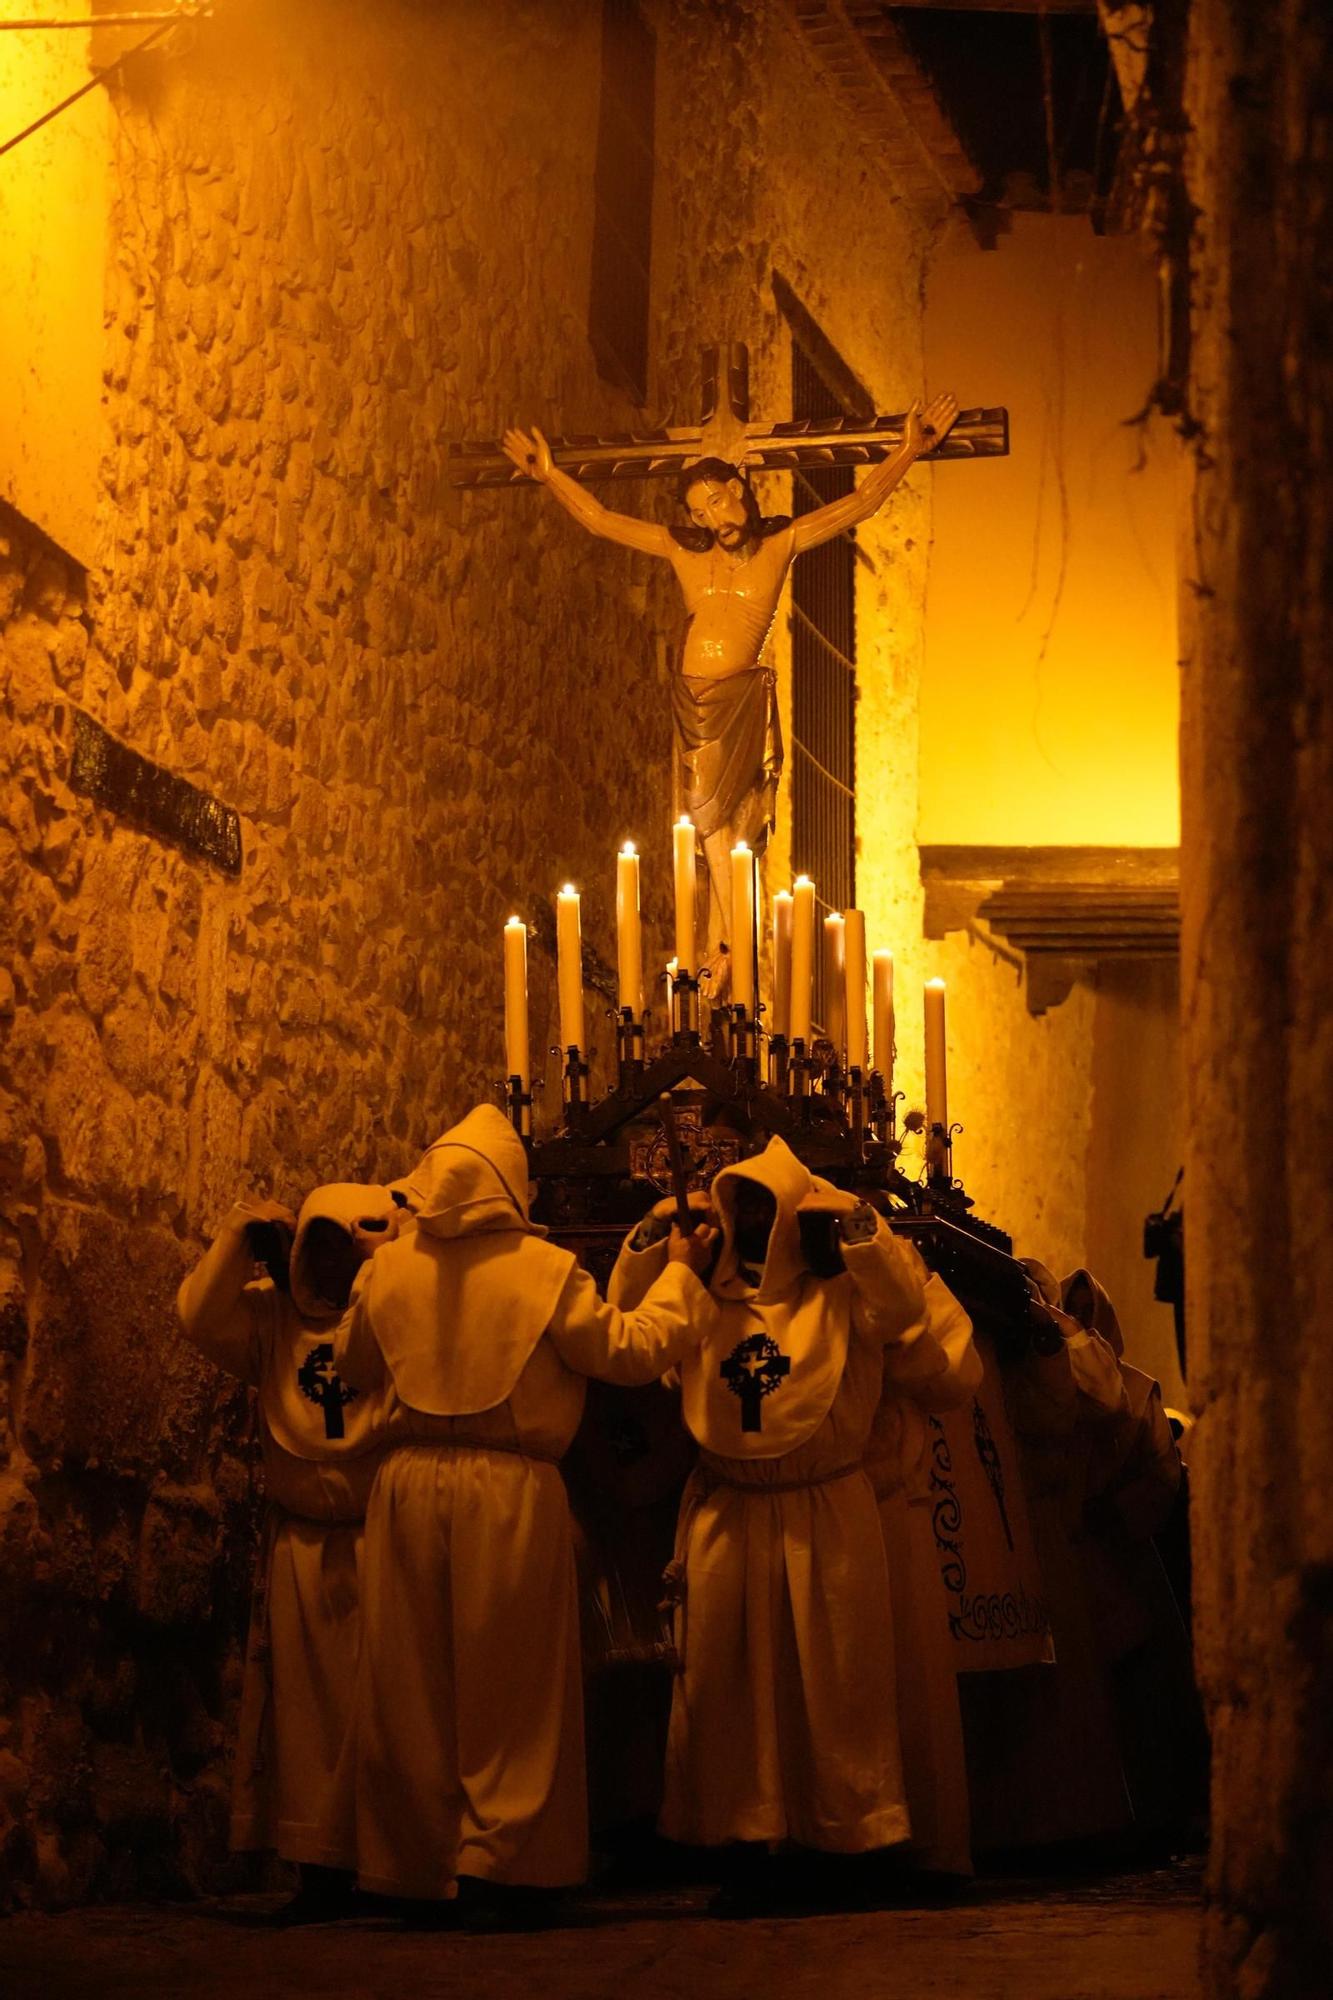 GALERÍA | Las imágenes de la procesión del Espíritu Santo